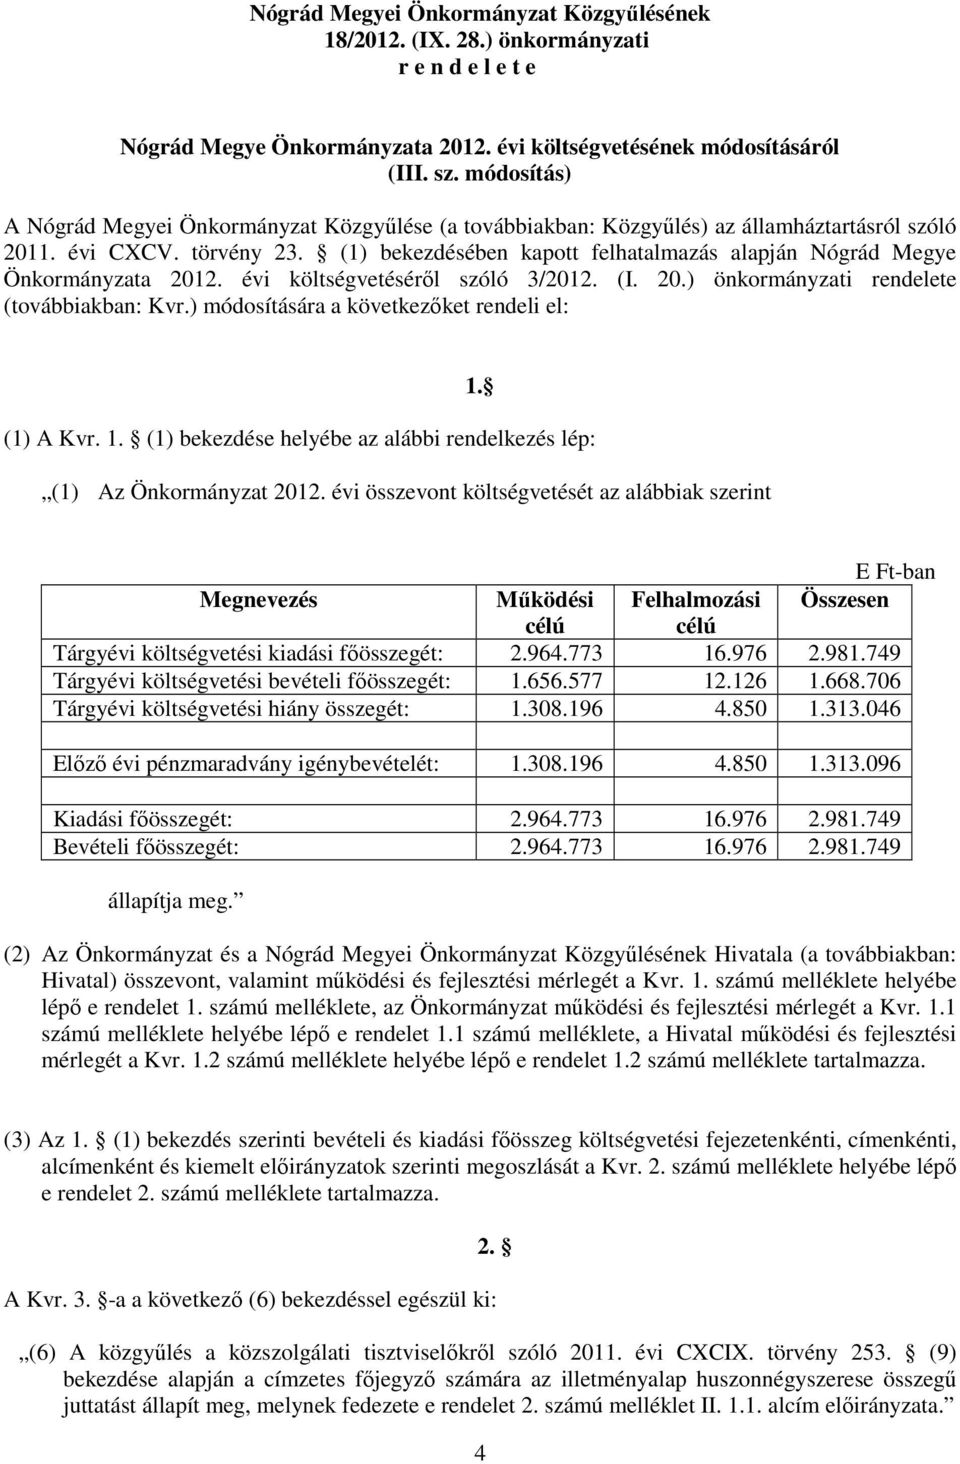 (1) bekezdésében kapott felhatalmazás alapján Nógrád Megye Önkormányzata 2012. évi költségvetéséről szóló 3/2012. (I. 20.) önkormányzati rendelete (továbbiakban: Kvr.